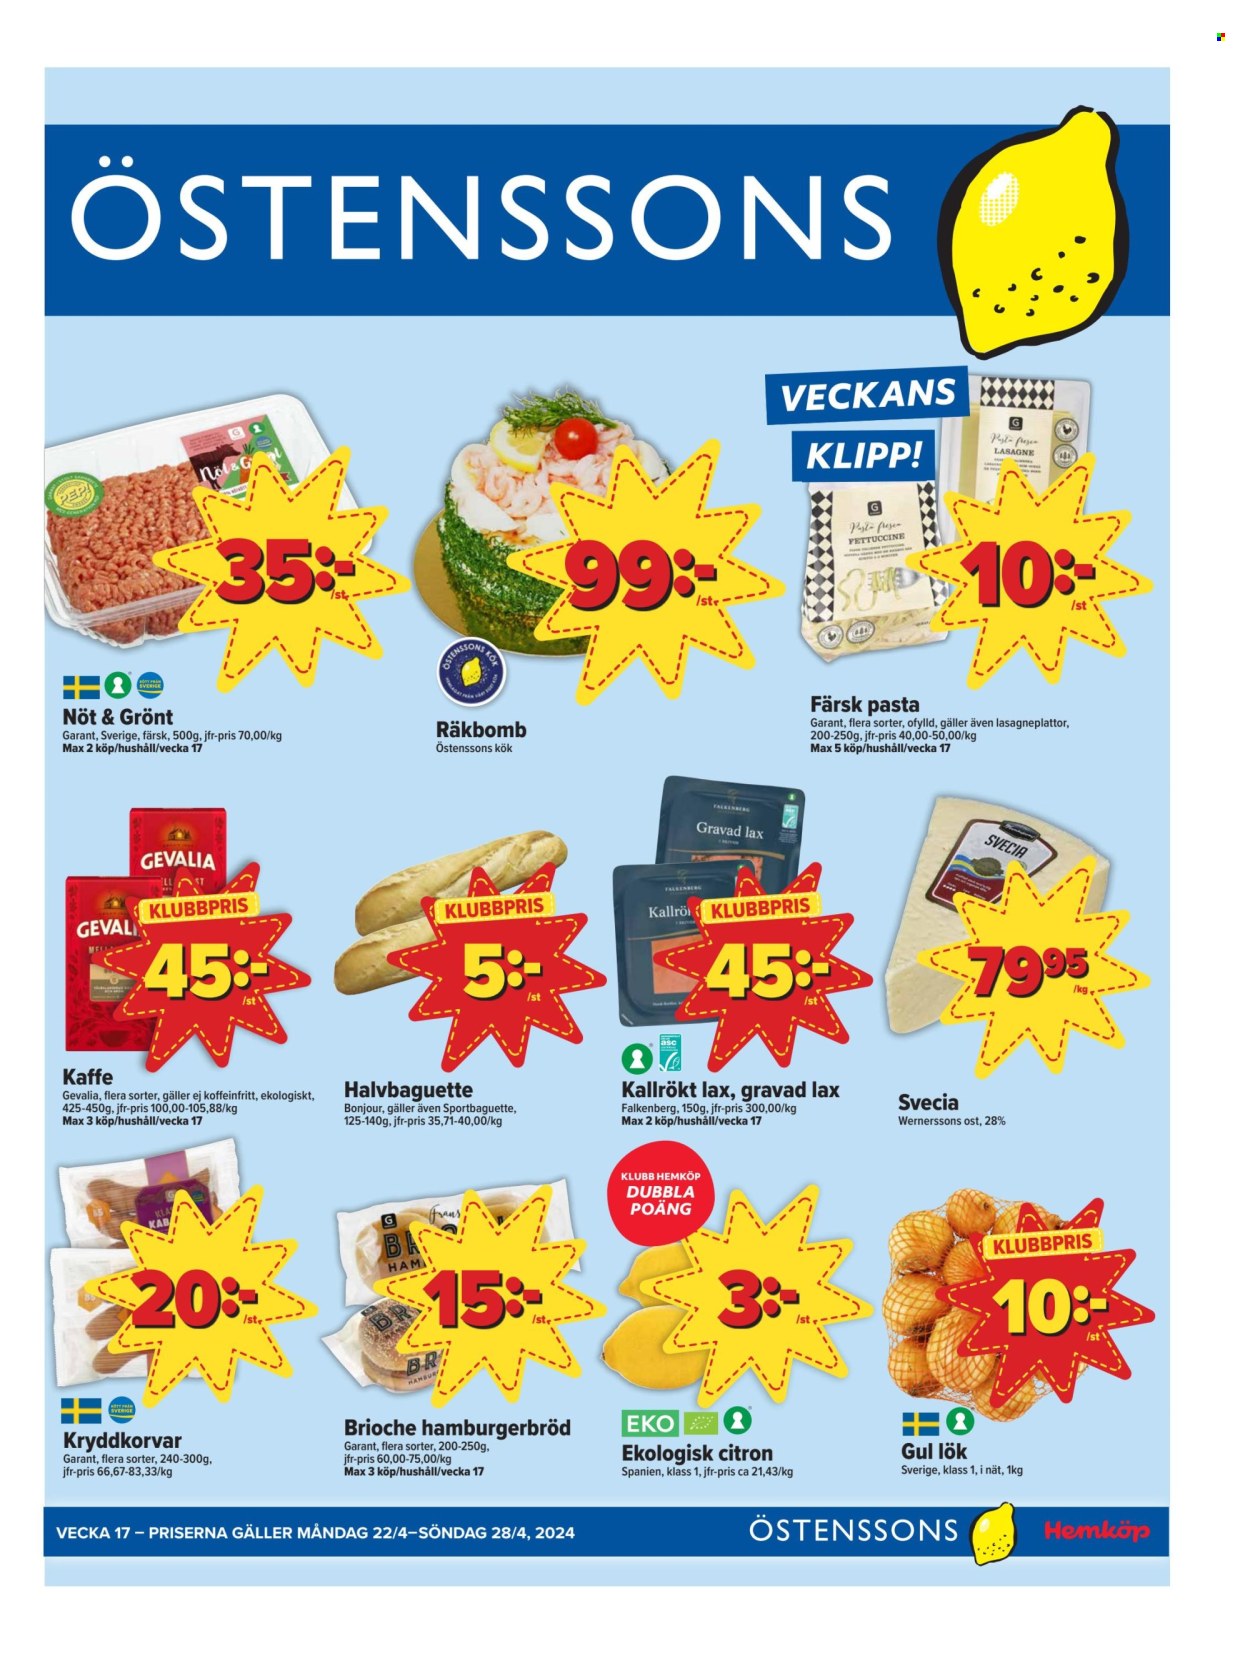 Östenssons reklamblad - 22/4 2024 - 28/4 2024.